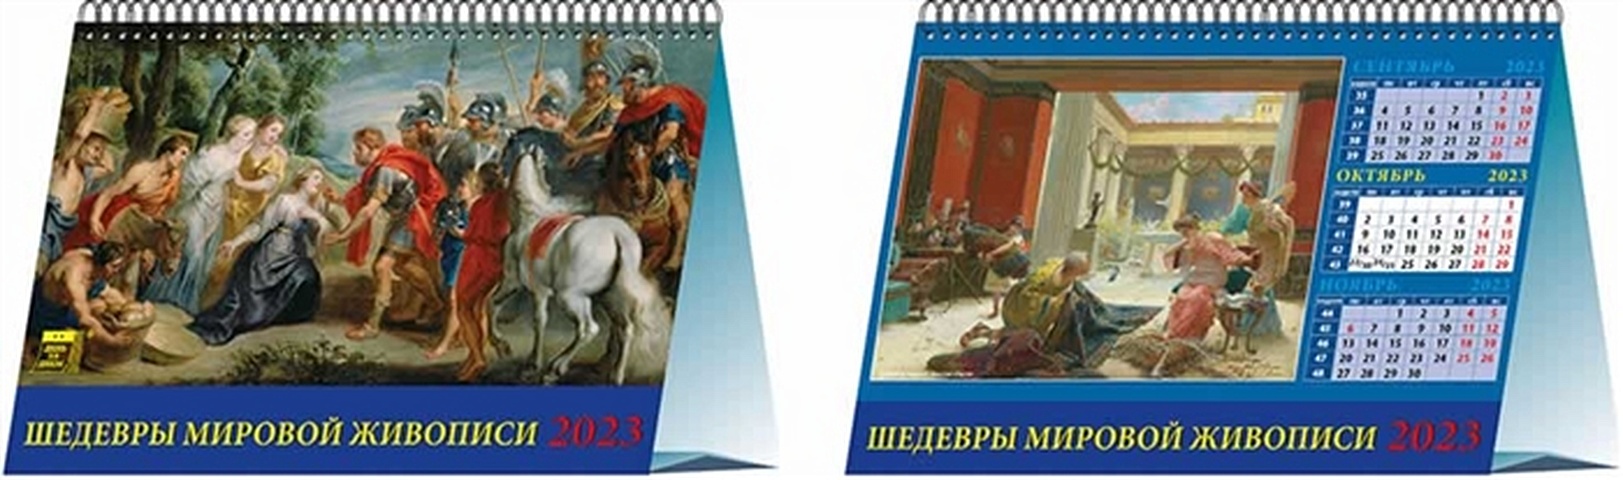 Календарь настольный на 2023 год Шедевры мировой живописи